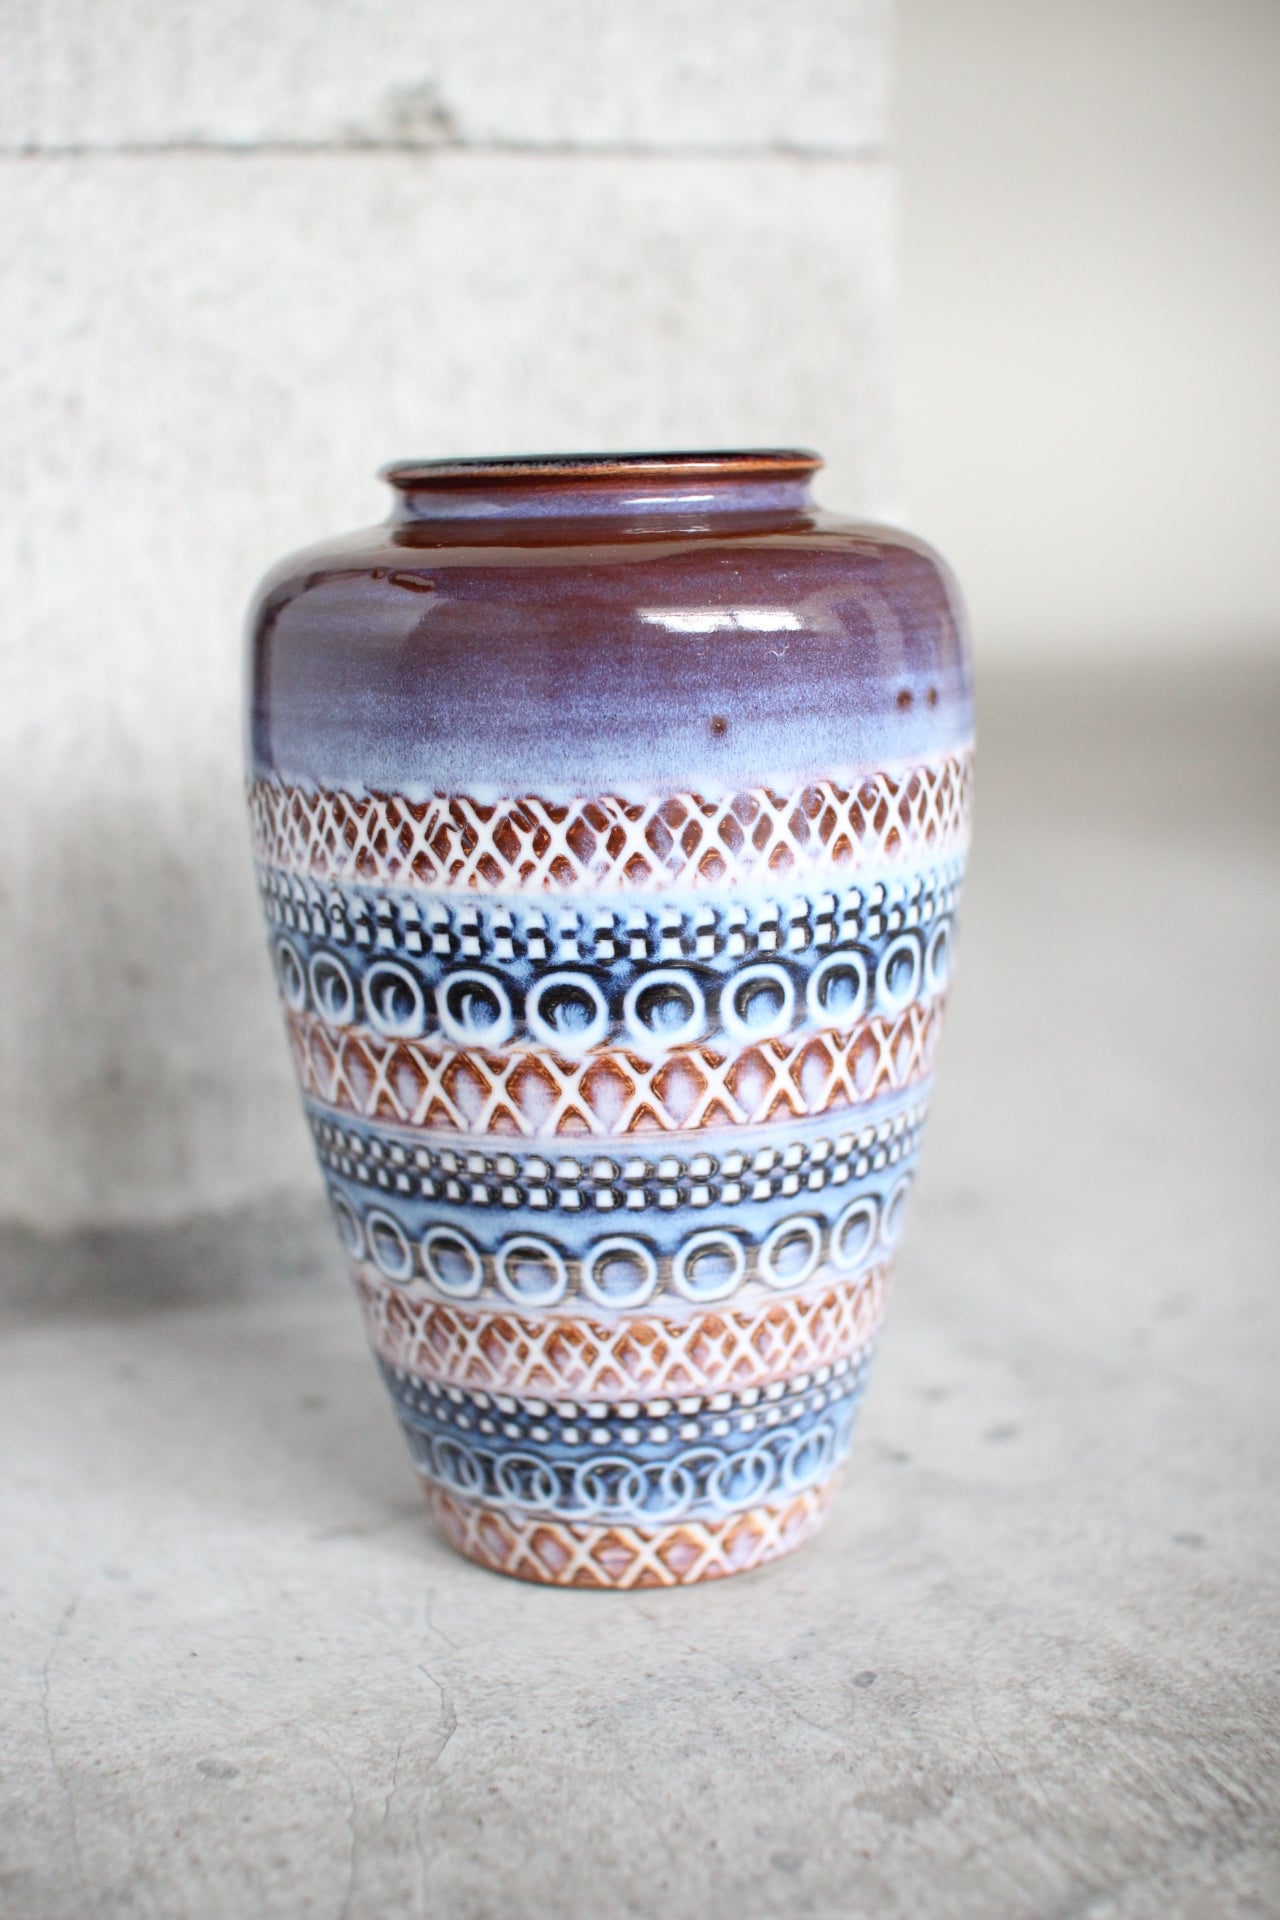 August Vase #2